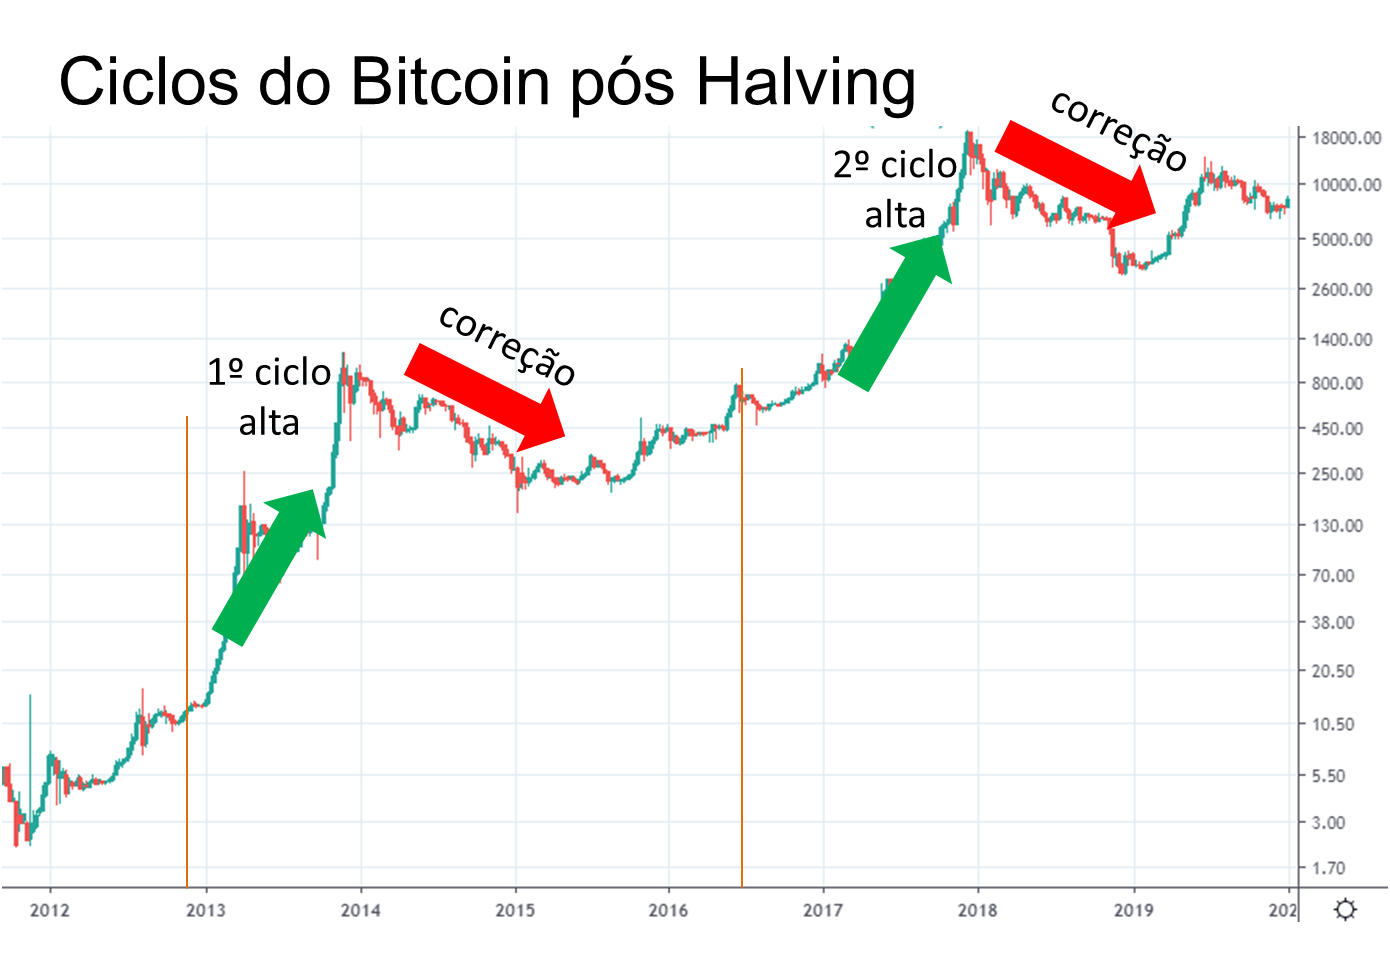 ciclos do bitcoin halving